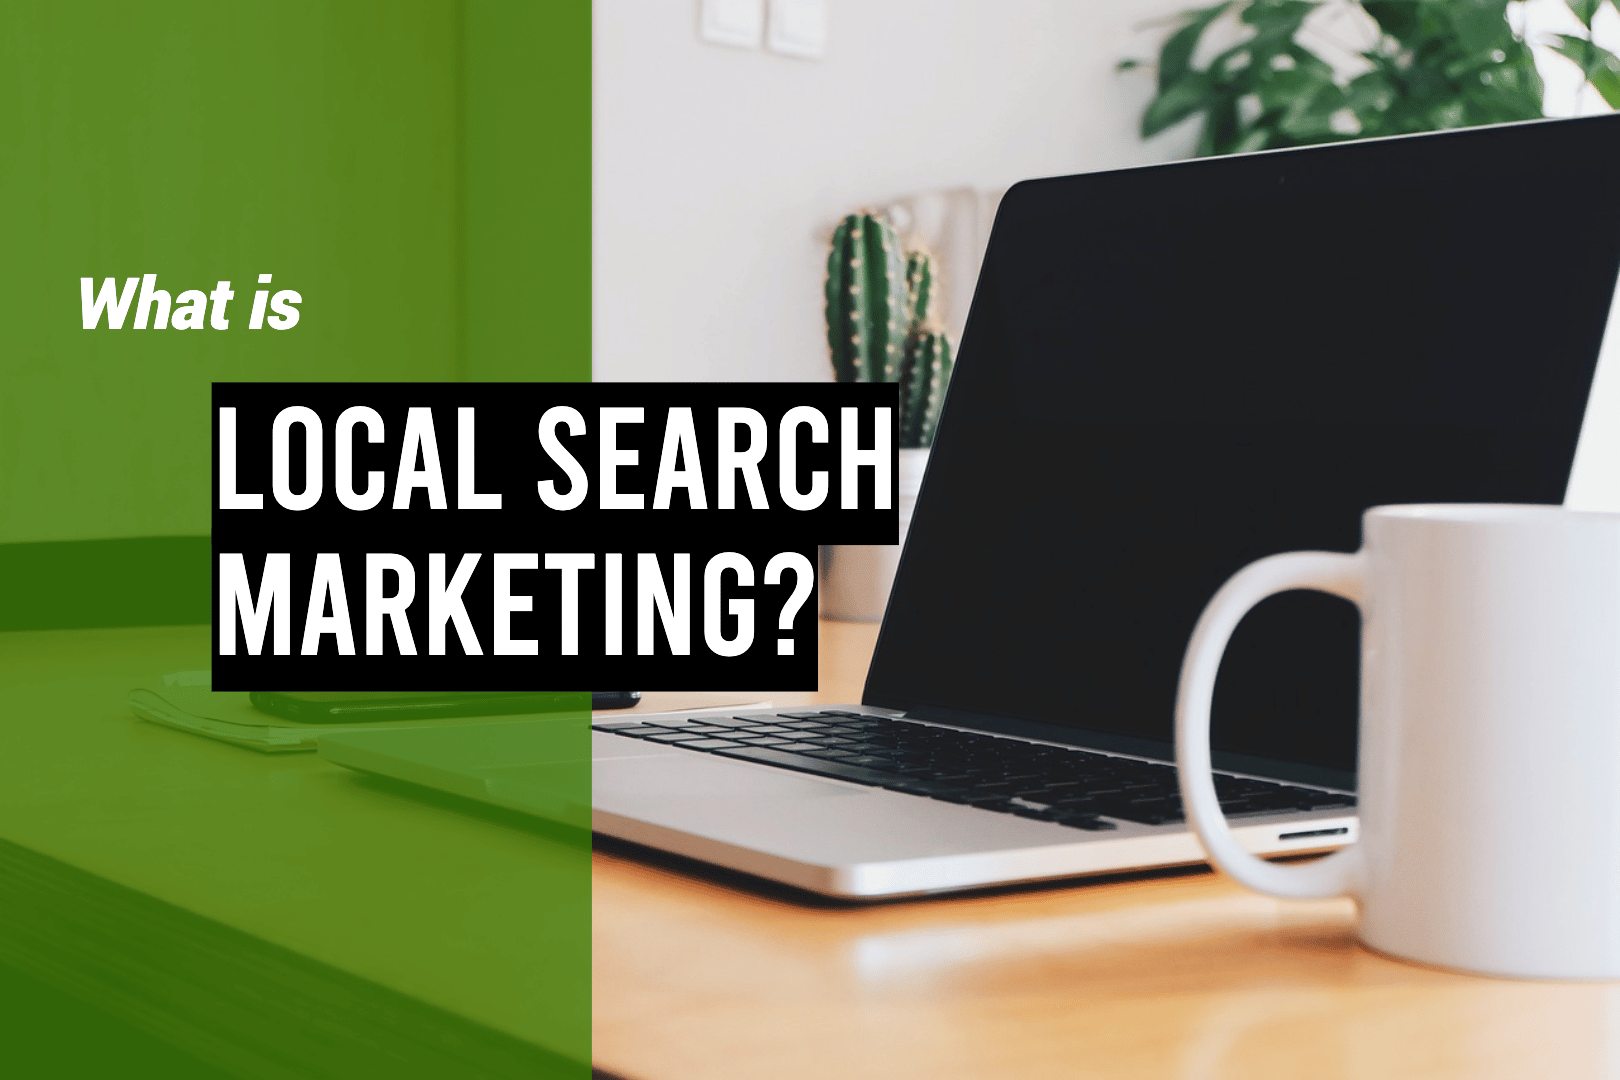 local search marketing